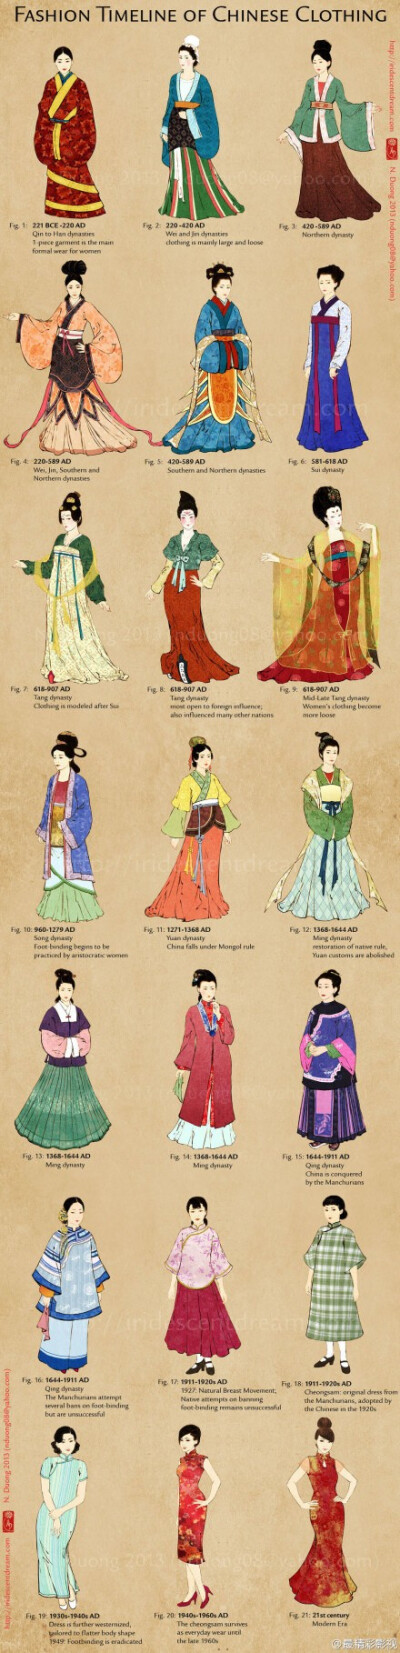 中国服饰演变史